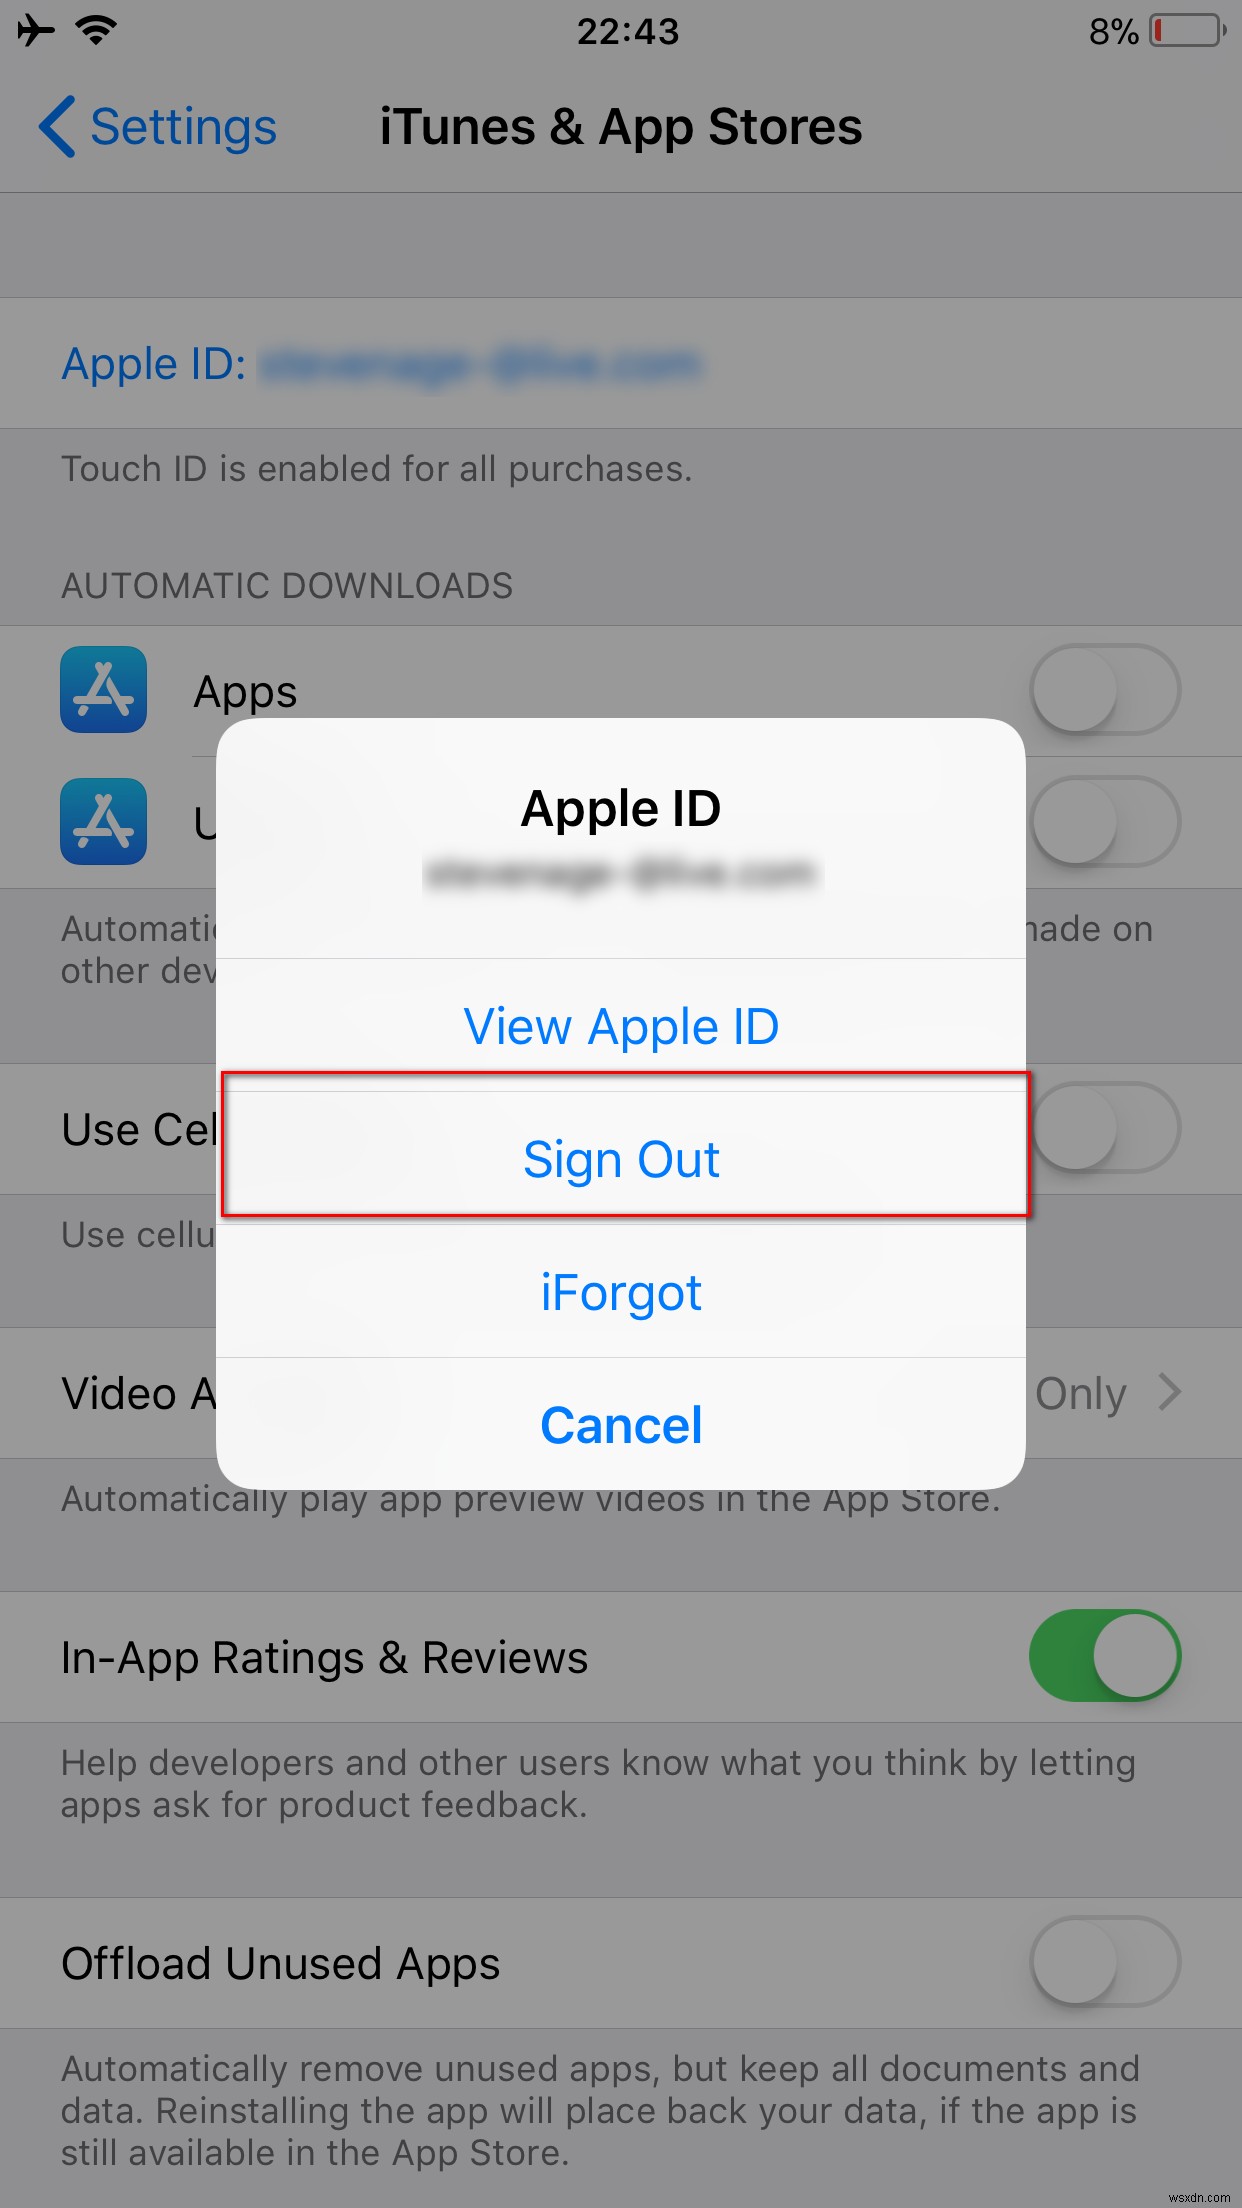 แก้ไข:การตรวจสอบล้มเหลว  มีข้อผิดพลาดในการเชื่อมต่อกับเซิร์ฟเวอร์ Apple ID  